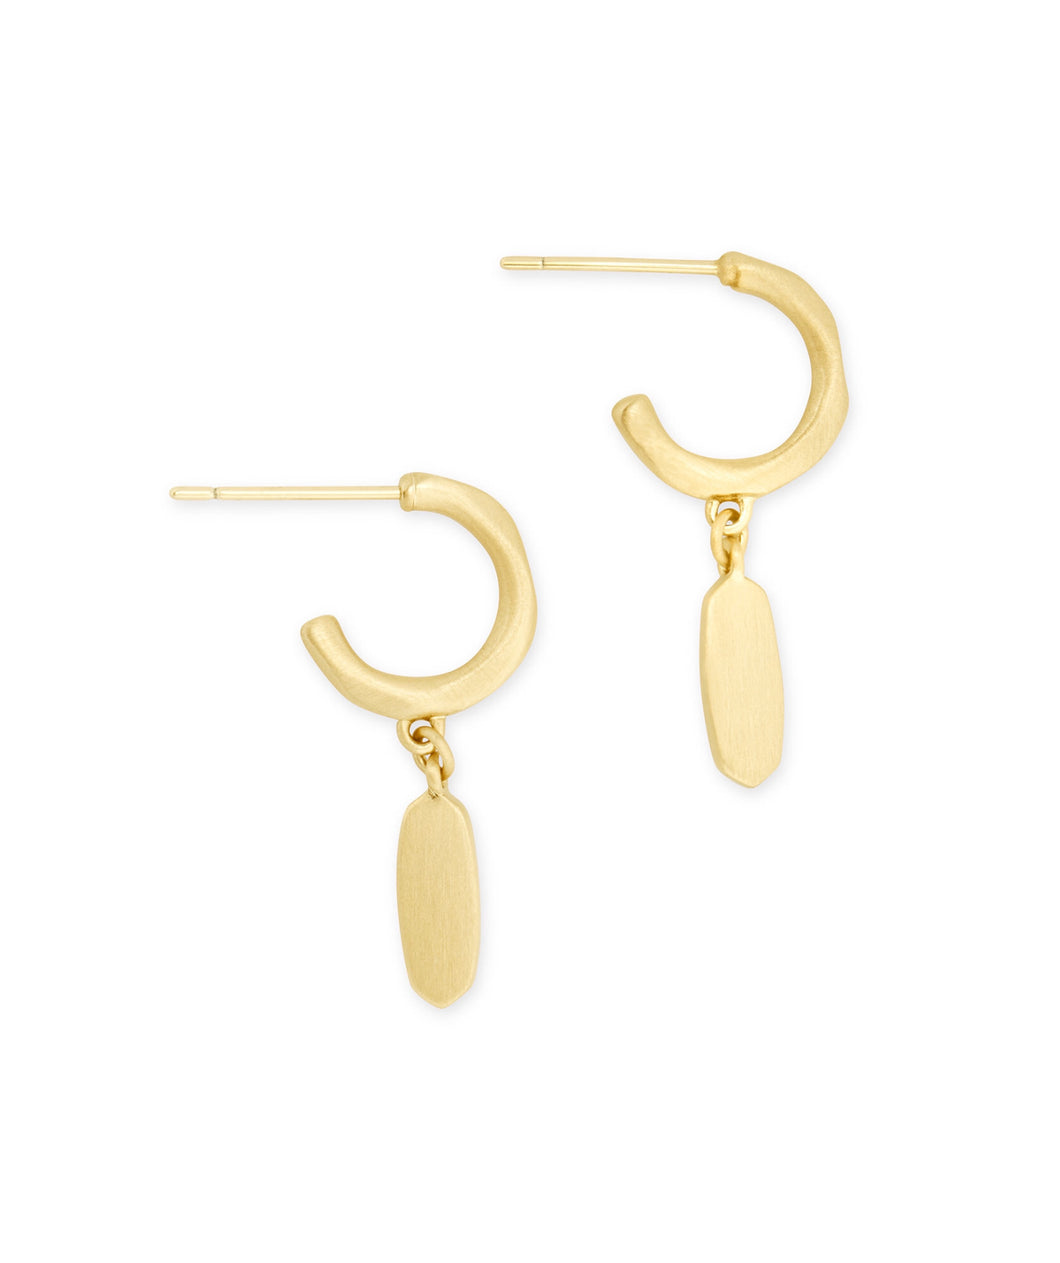 Kendra Scott: Fern Huggie Earrings - Gold - The Vogue Boutique